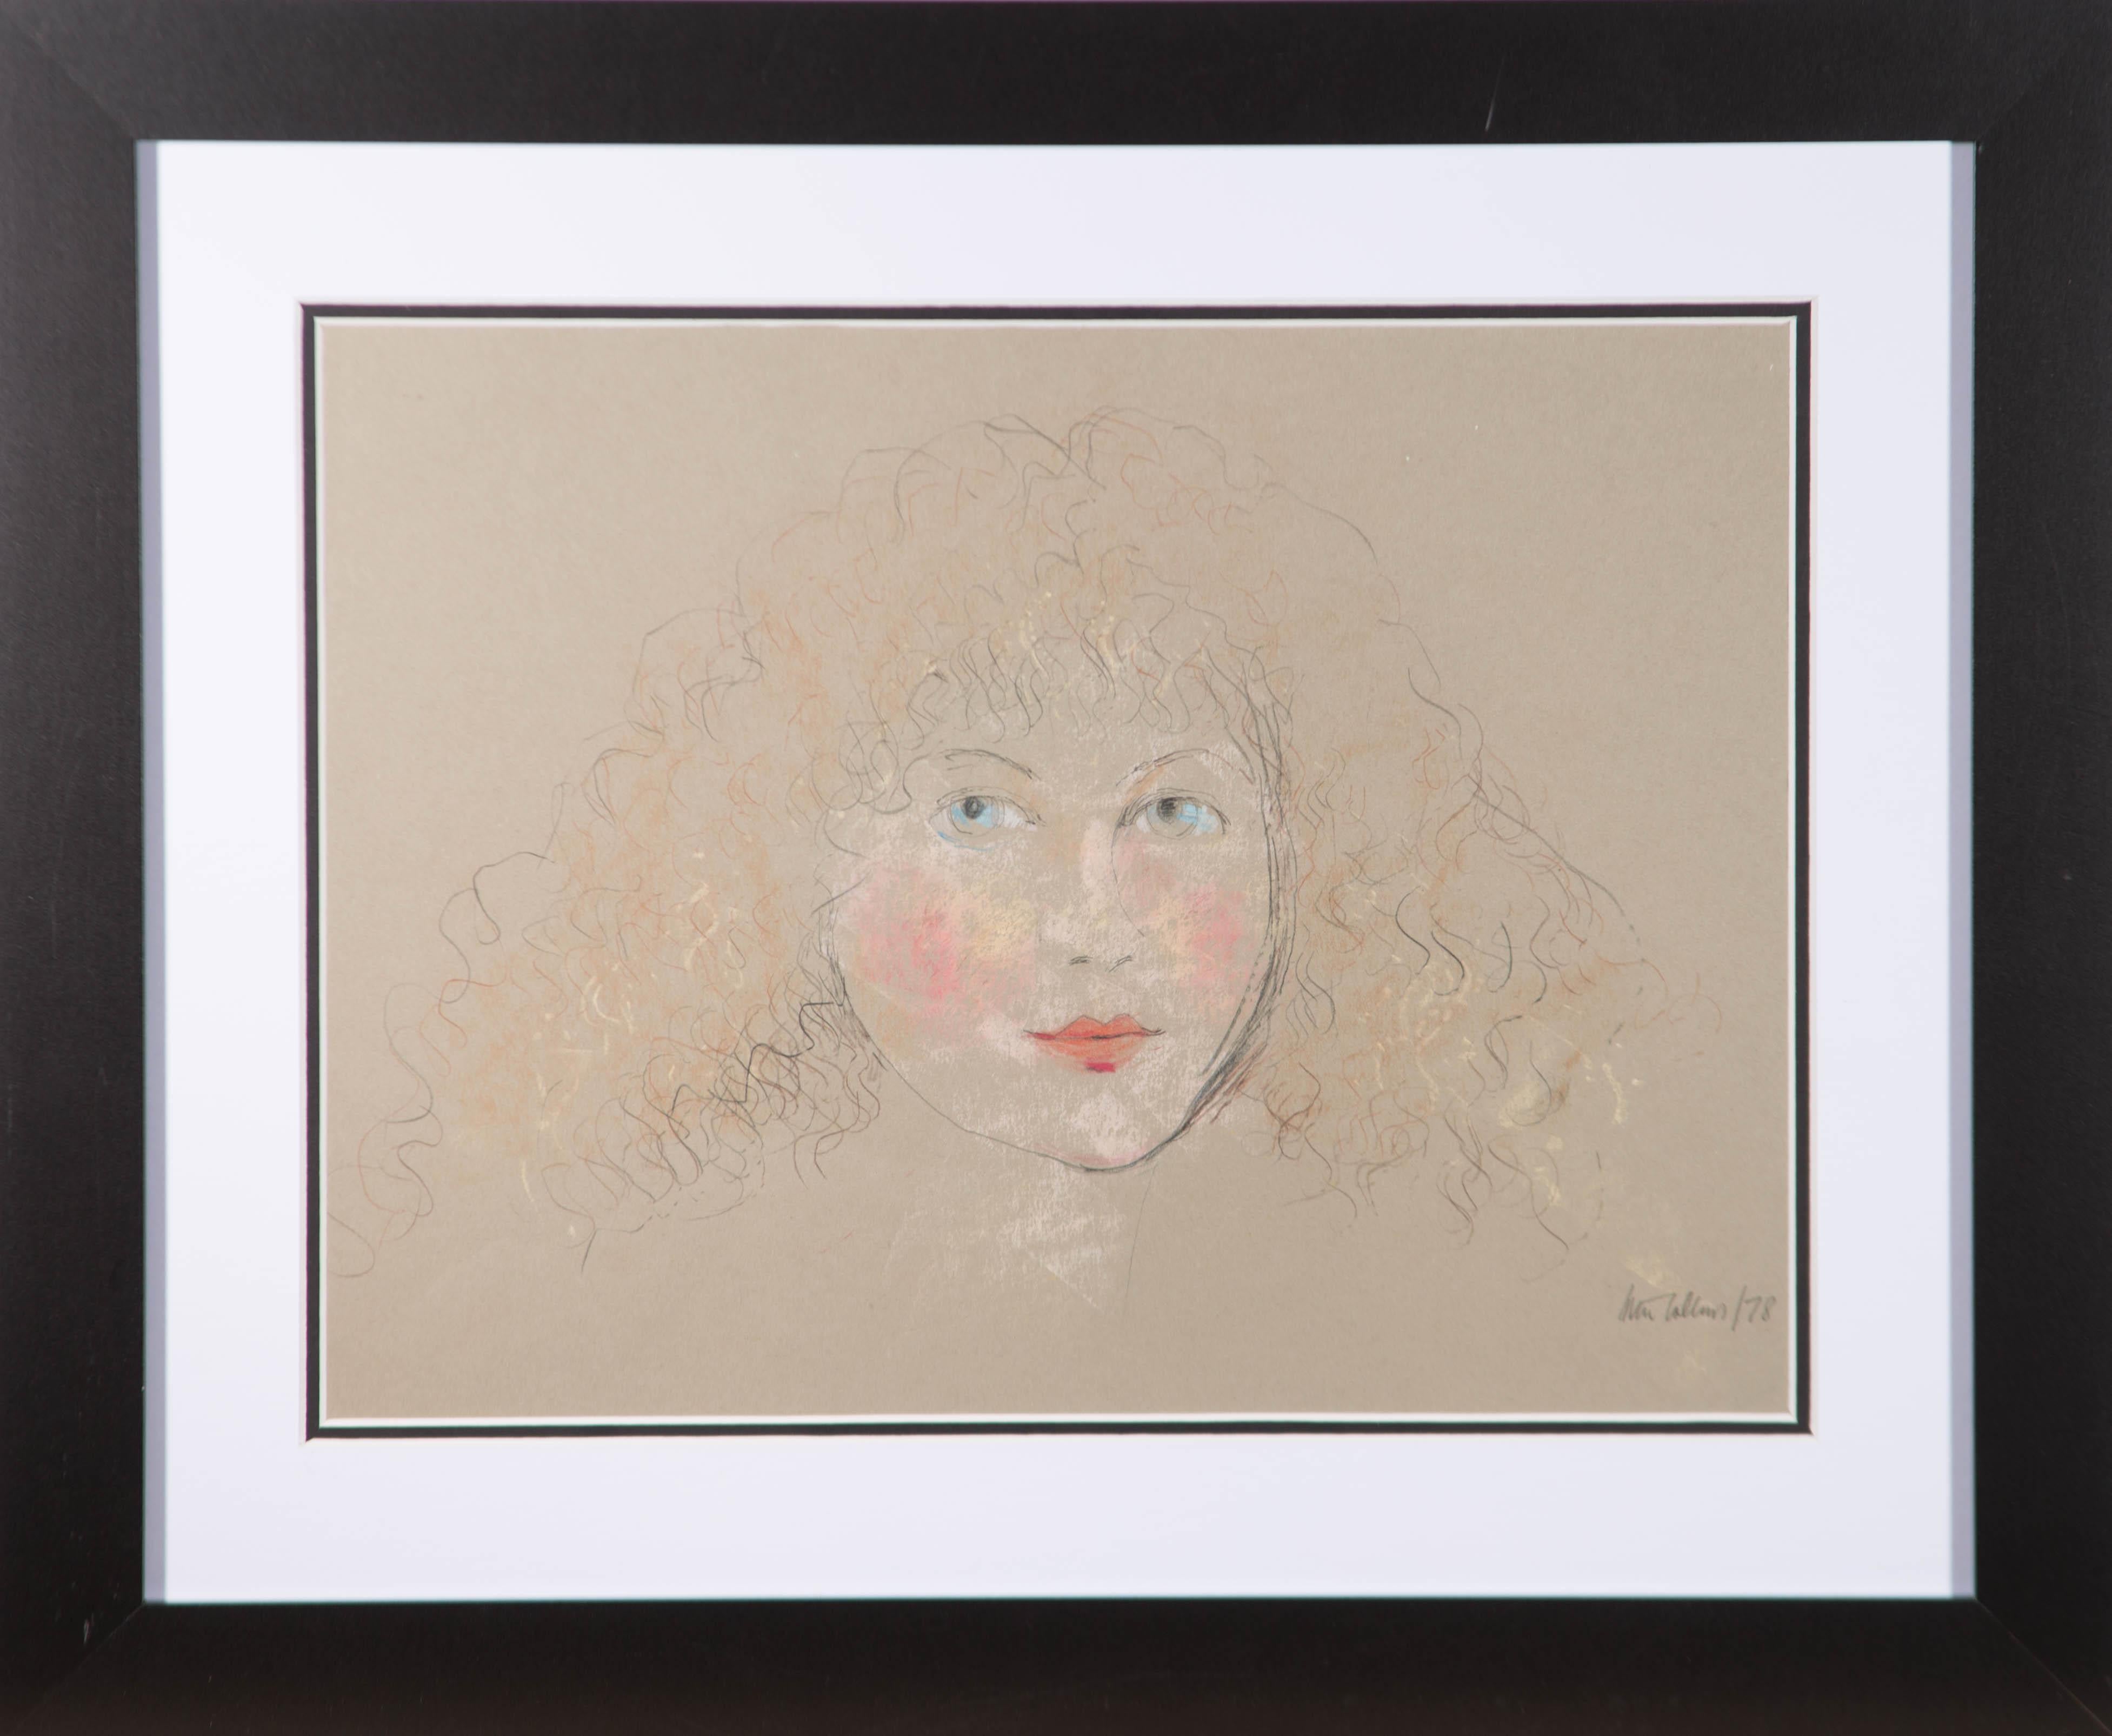 Ein wunderschönes Porträt einer jungen Frau von dem unter Denkmalschutz stehenden britischen Künstler Peter Collins. Hier hat er die mühelose Schönheit der Dargestellten mit wenigen, ausdrucksstarken Bleistiftstrichen und Farbflecken eingefangen.